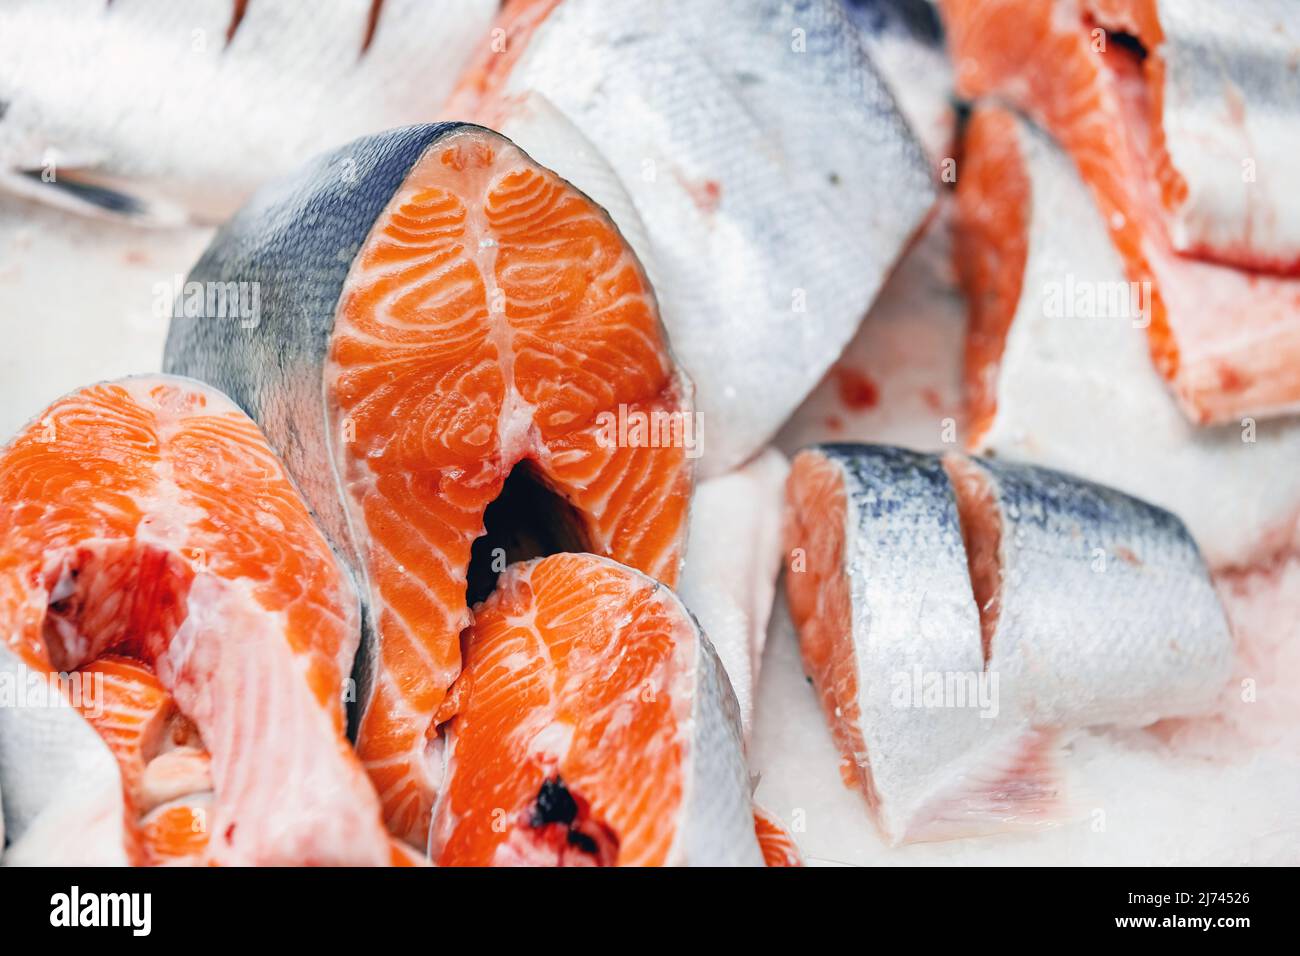 Truite, coupée en morceaux, posée sur la glace sur le comptoir du magasin. Morceaux de poisson rouge en gros plan. Banque D'Images